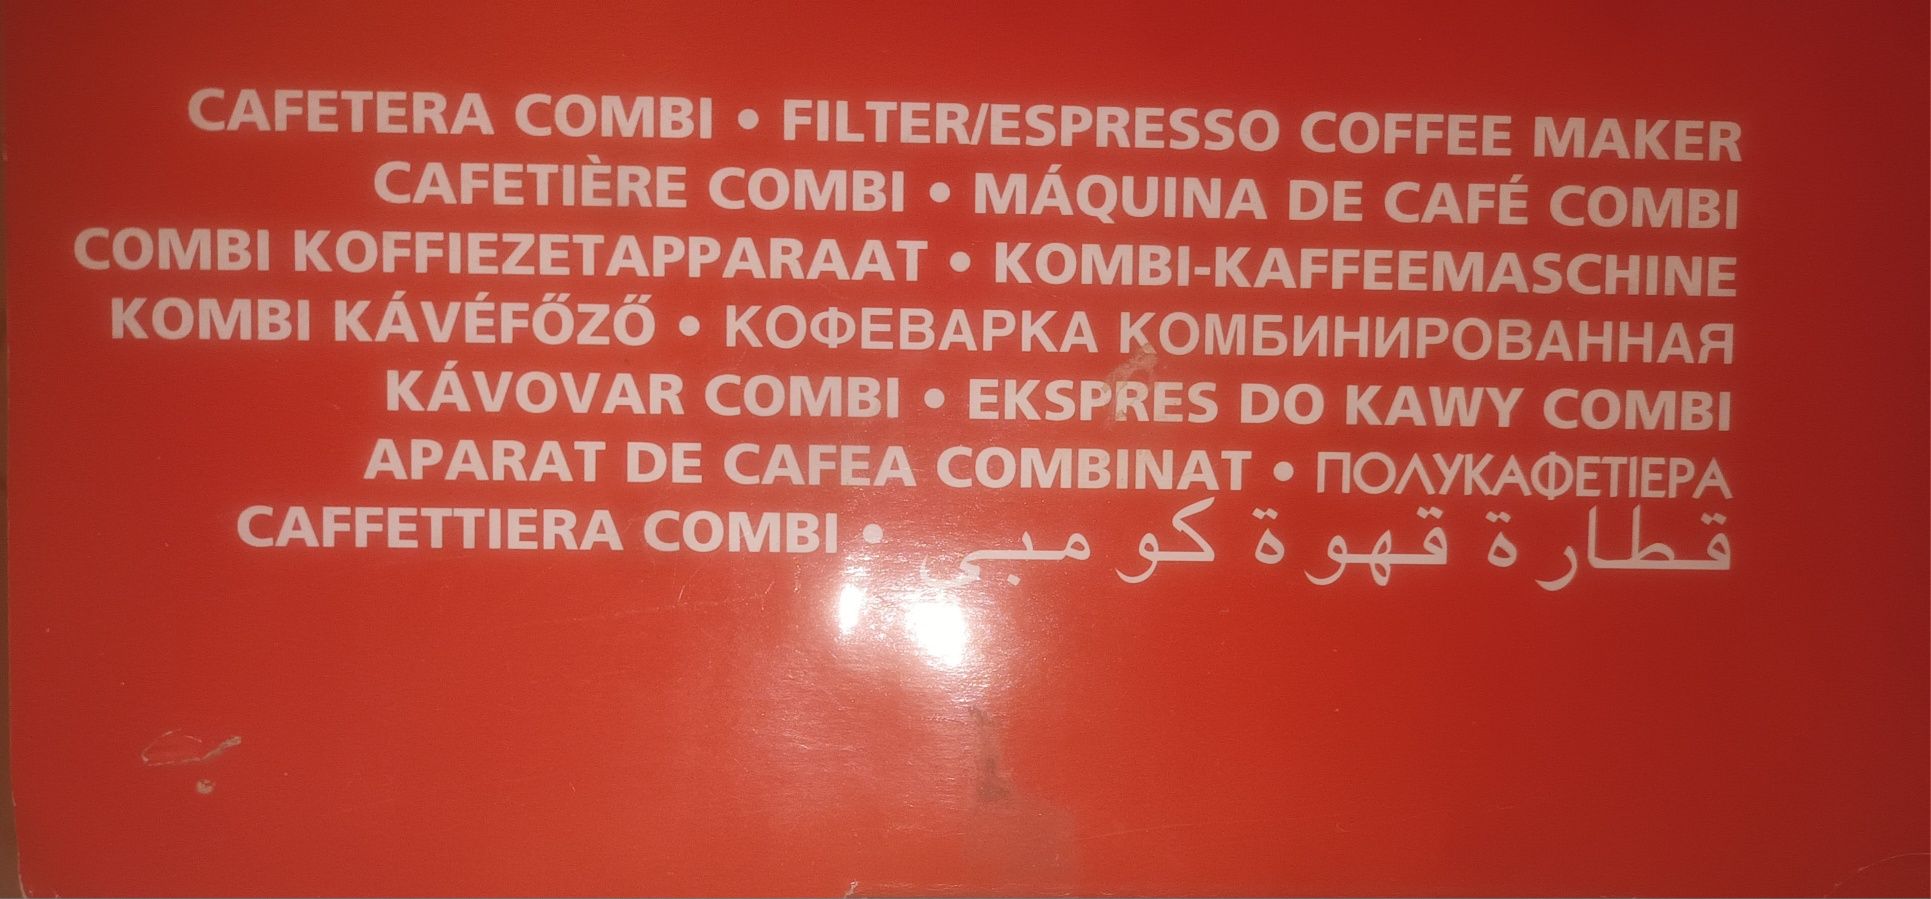 Máquina de café combi (NOVA) Ufesa CK-7350